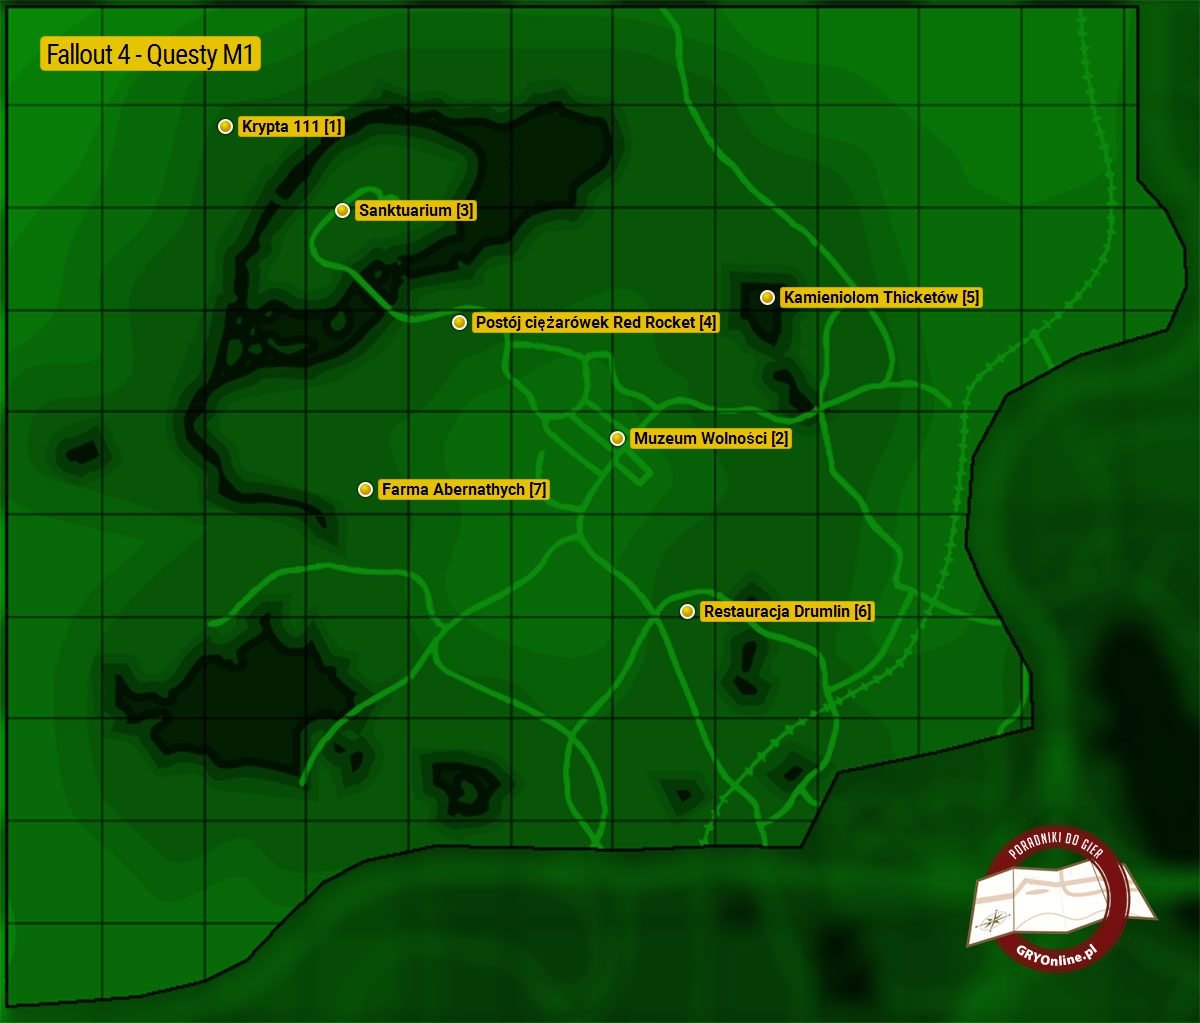 кантри кроссинг на карте fallout 4 фото 71